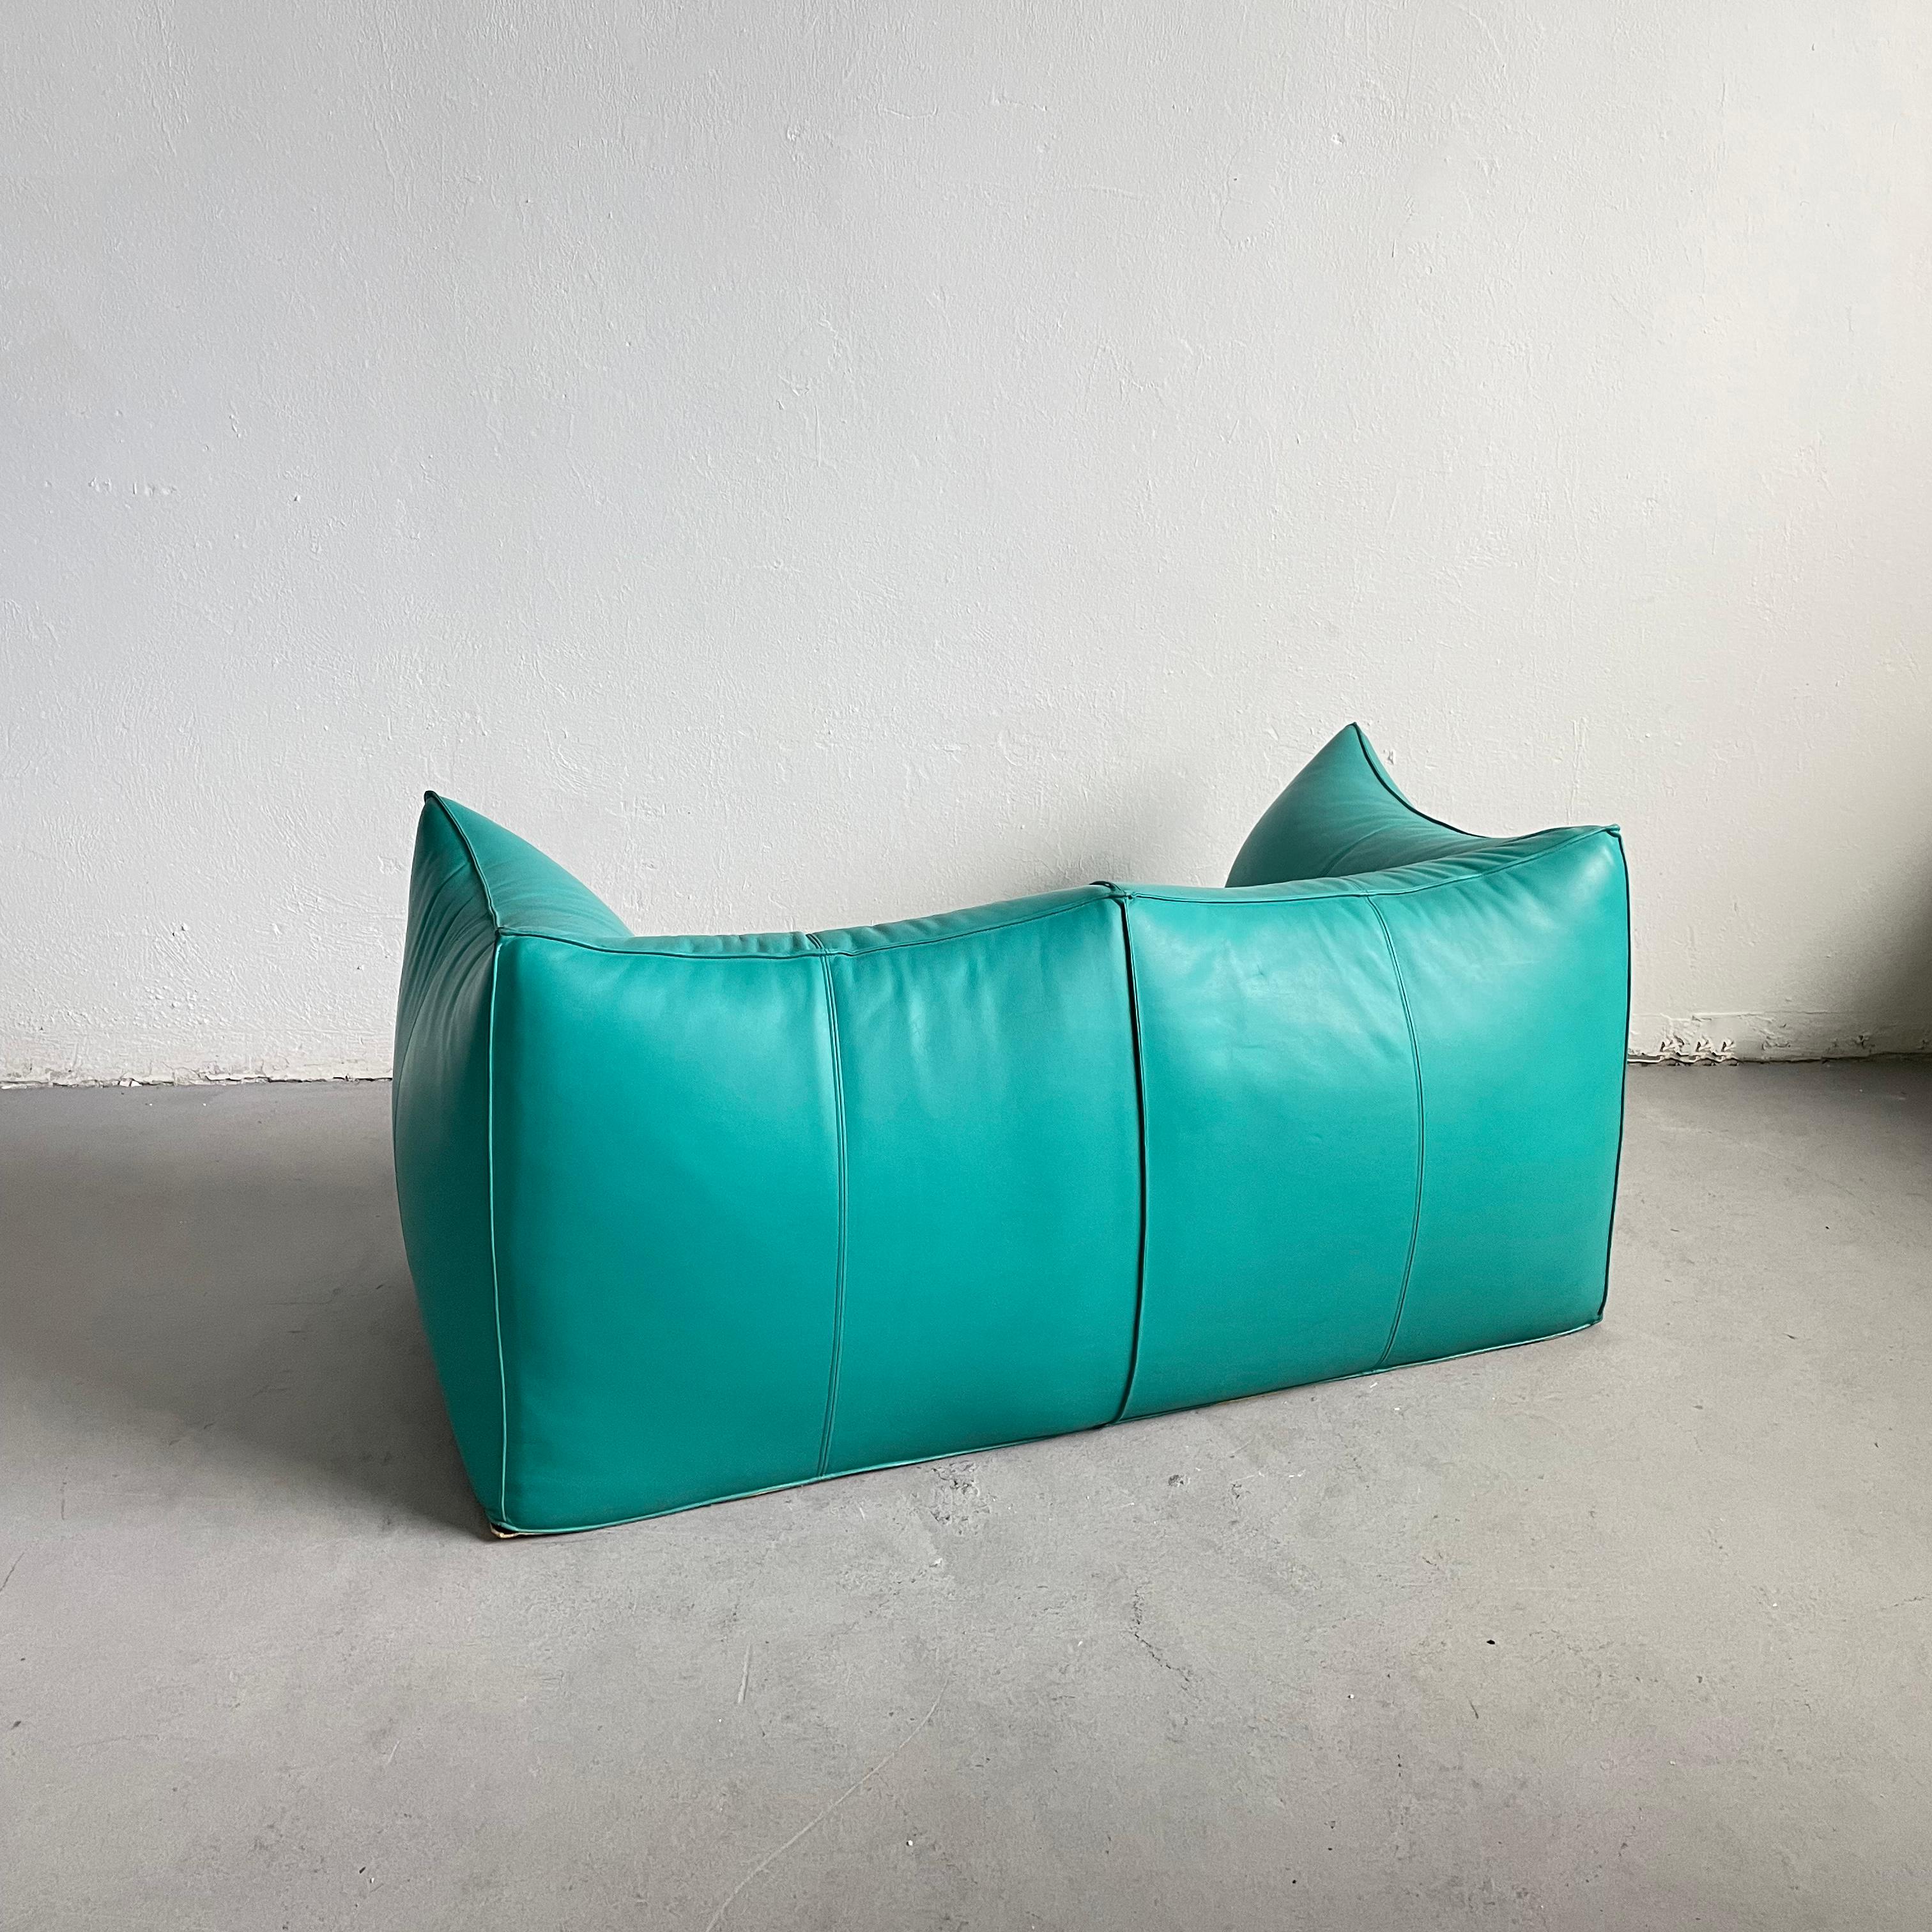 Le Bambole 2-Seater Sofa in Turquoise Leather, Mario Bellini for B&B Italia 70s For Sale 4